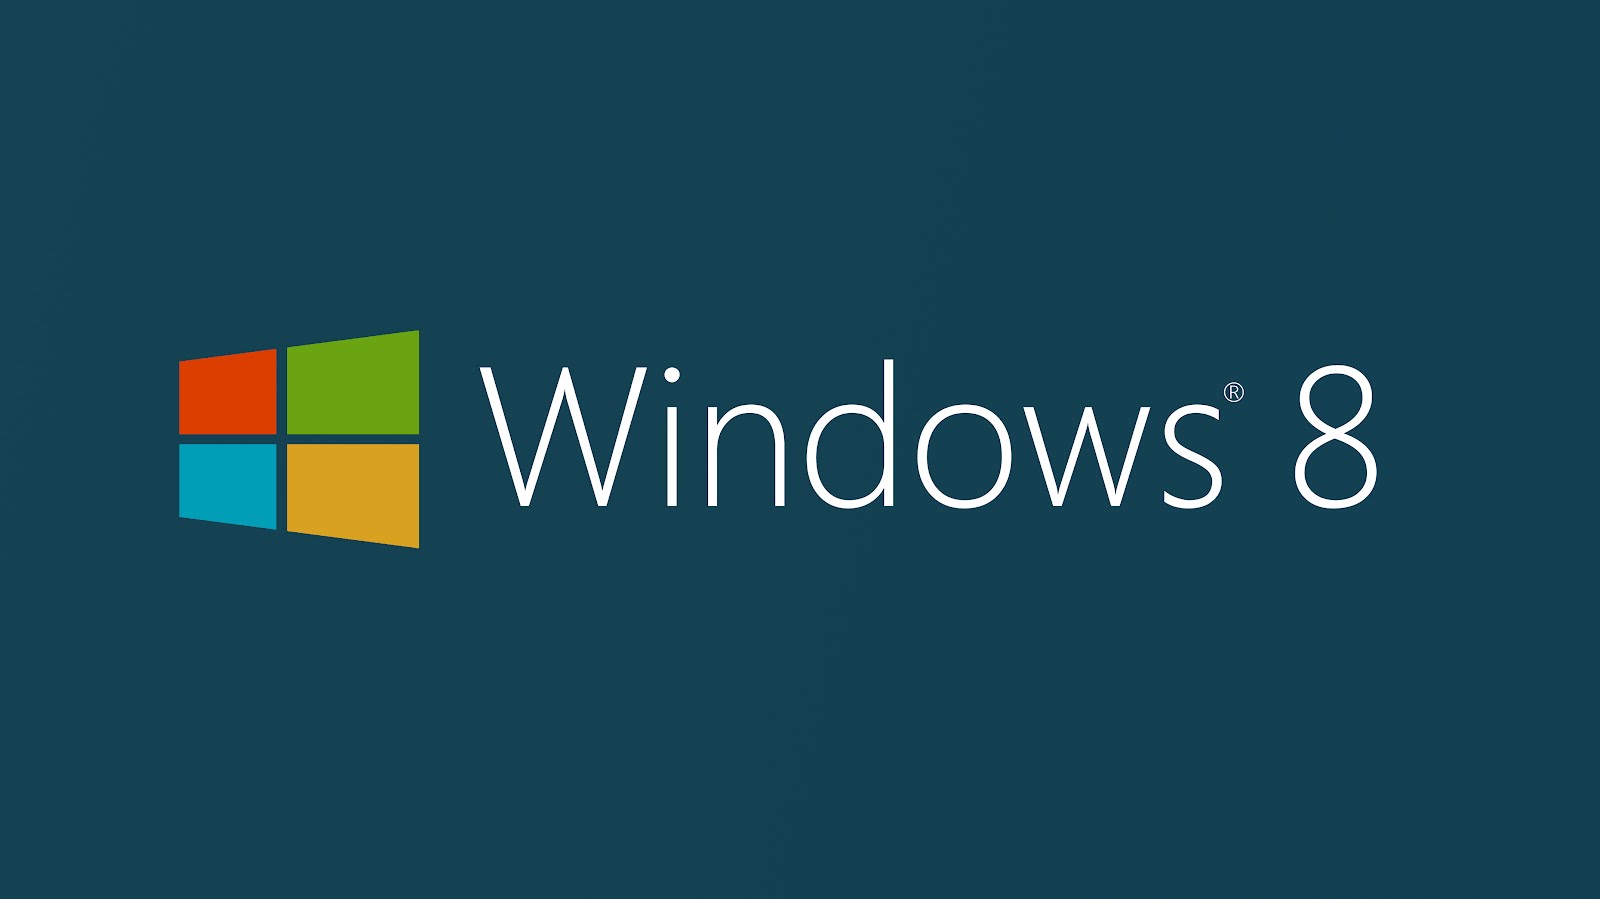 Windows story. ОС виндовс 8. Операционная система Windows 8. Виндовс 8.1. Виндовс 8 система.